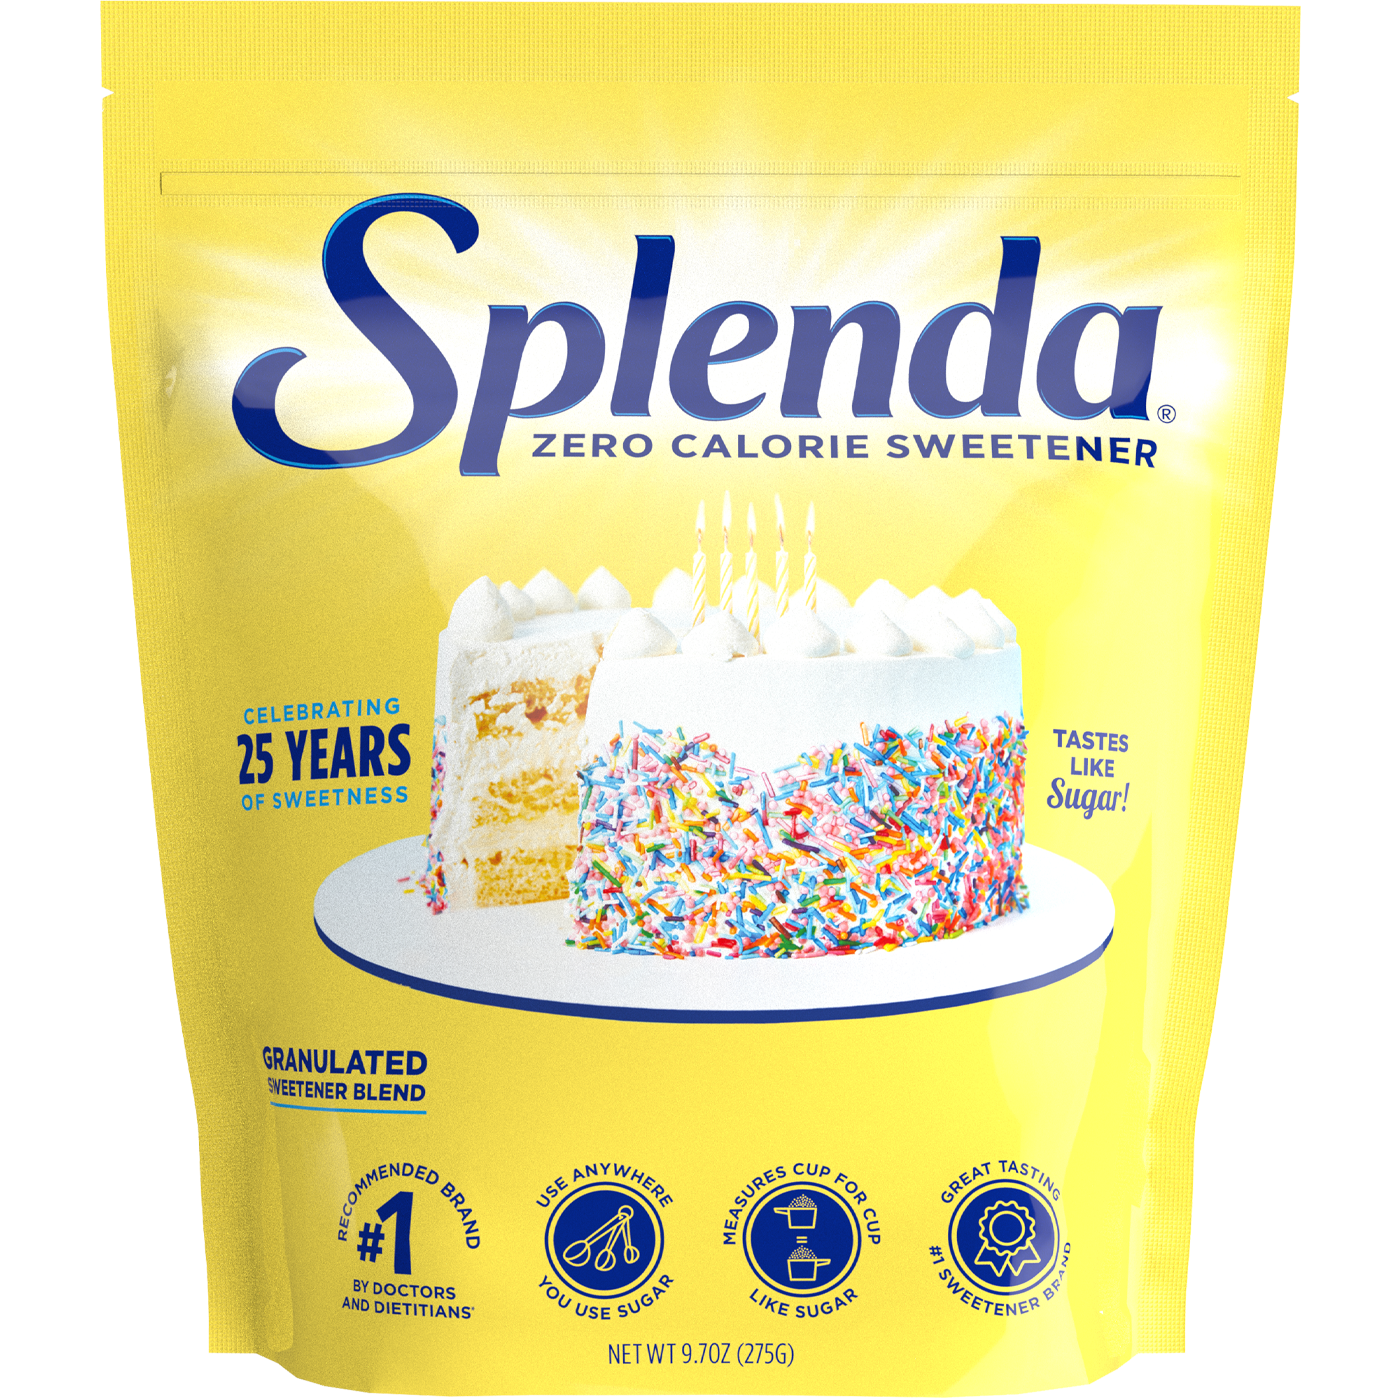 Splenda Granulated Sweetener Limited Edition Pack